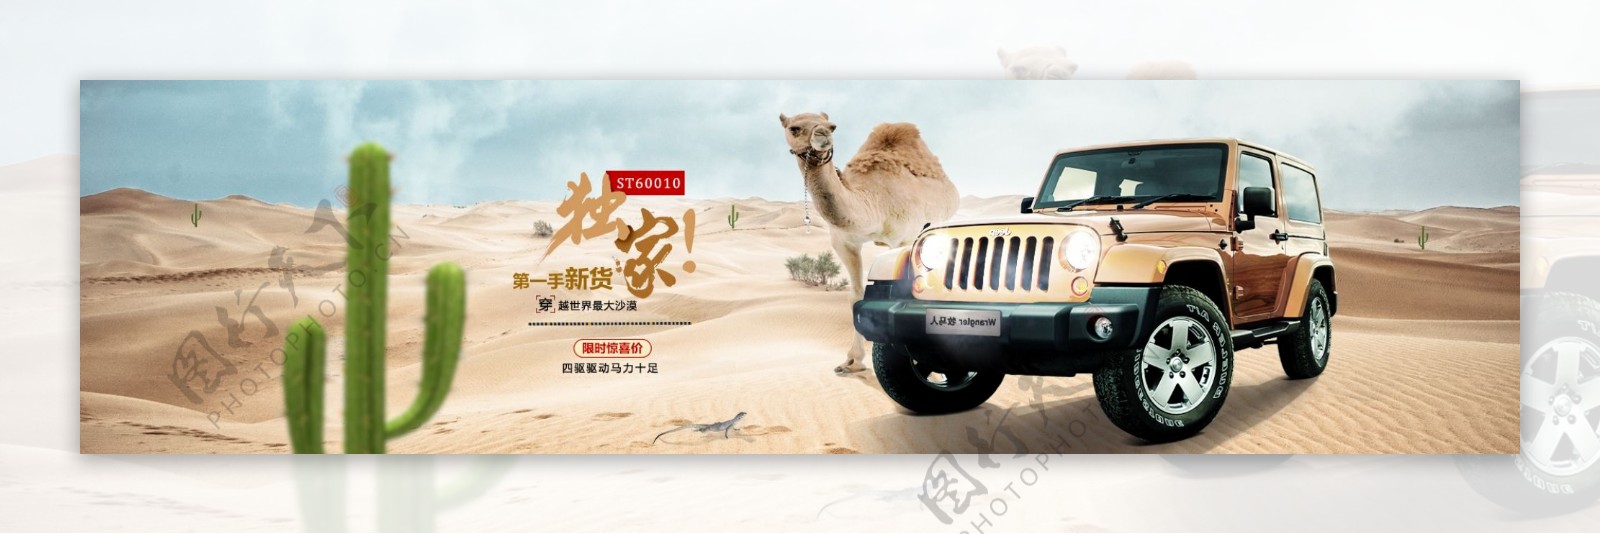 沙漠越野汽配金黄大漠骆驼仙人掌背景海报